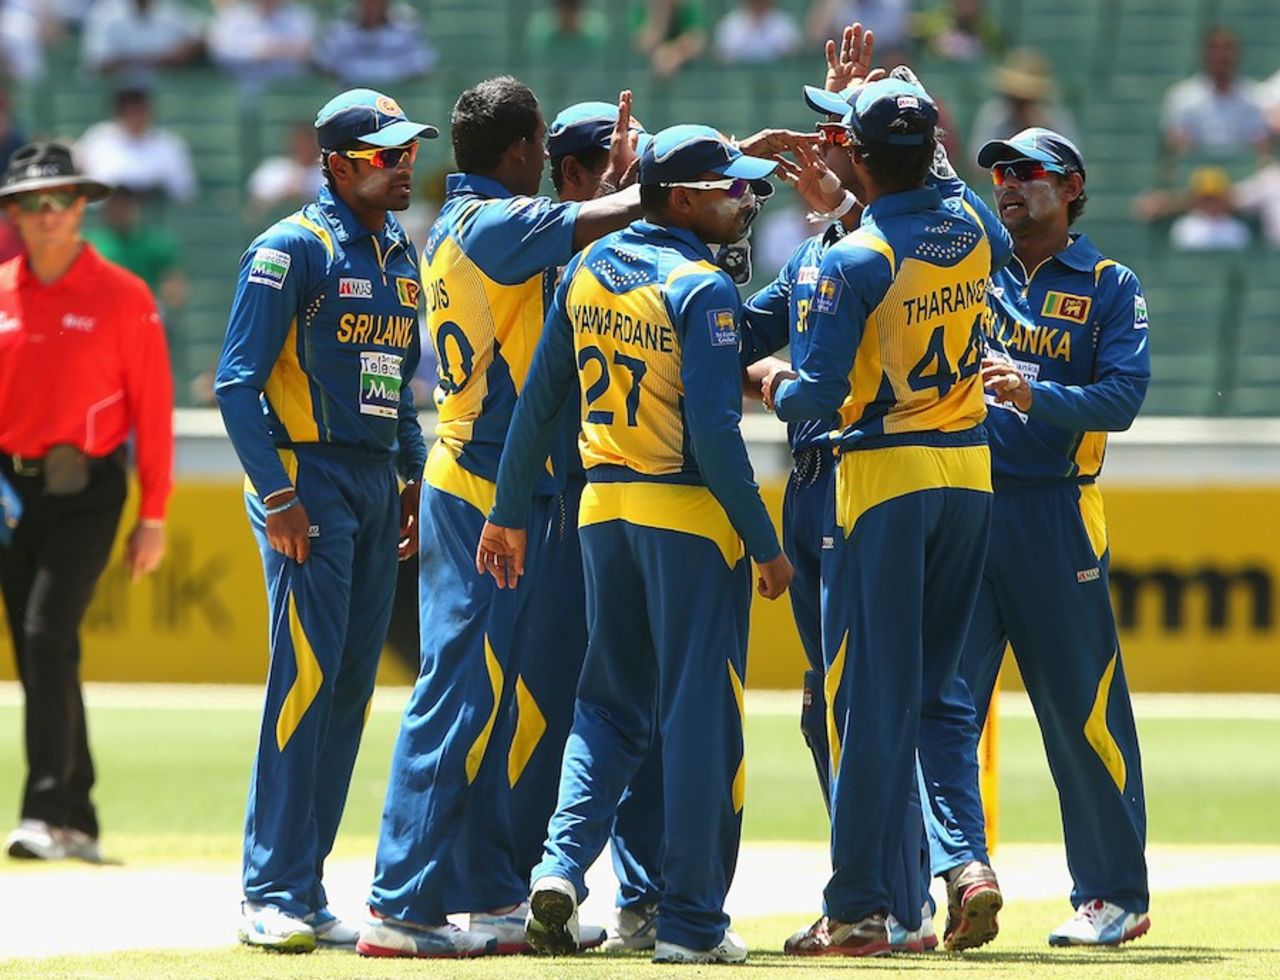 The Sri Lankans celebrate Aaron Finch's wicket, Australia v Sri Lanka, 1st ODI, Melbourne, January 11, 2013